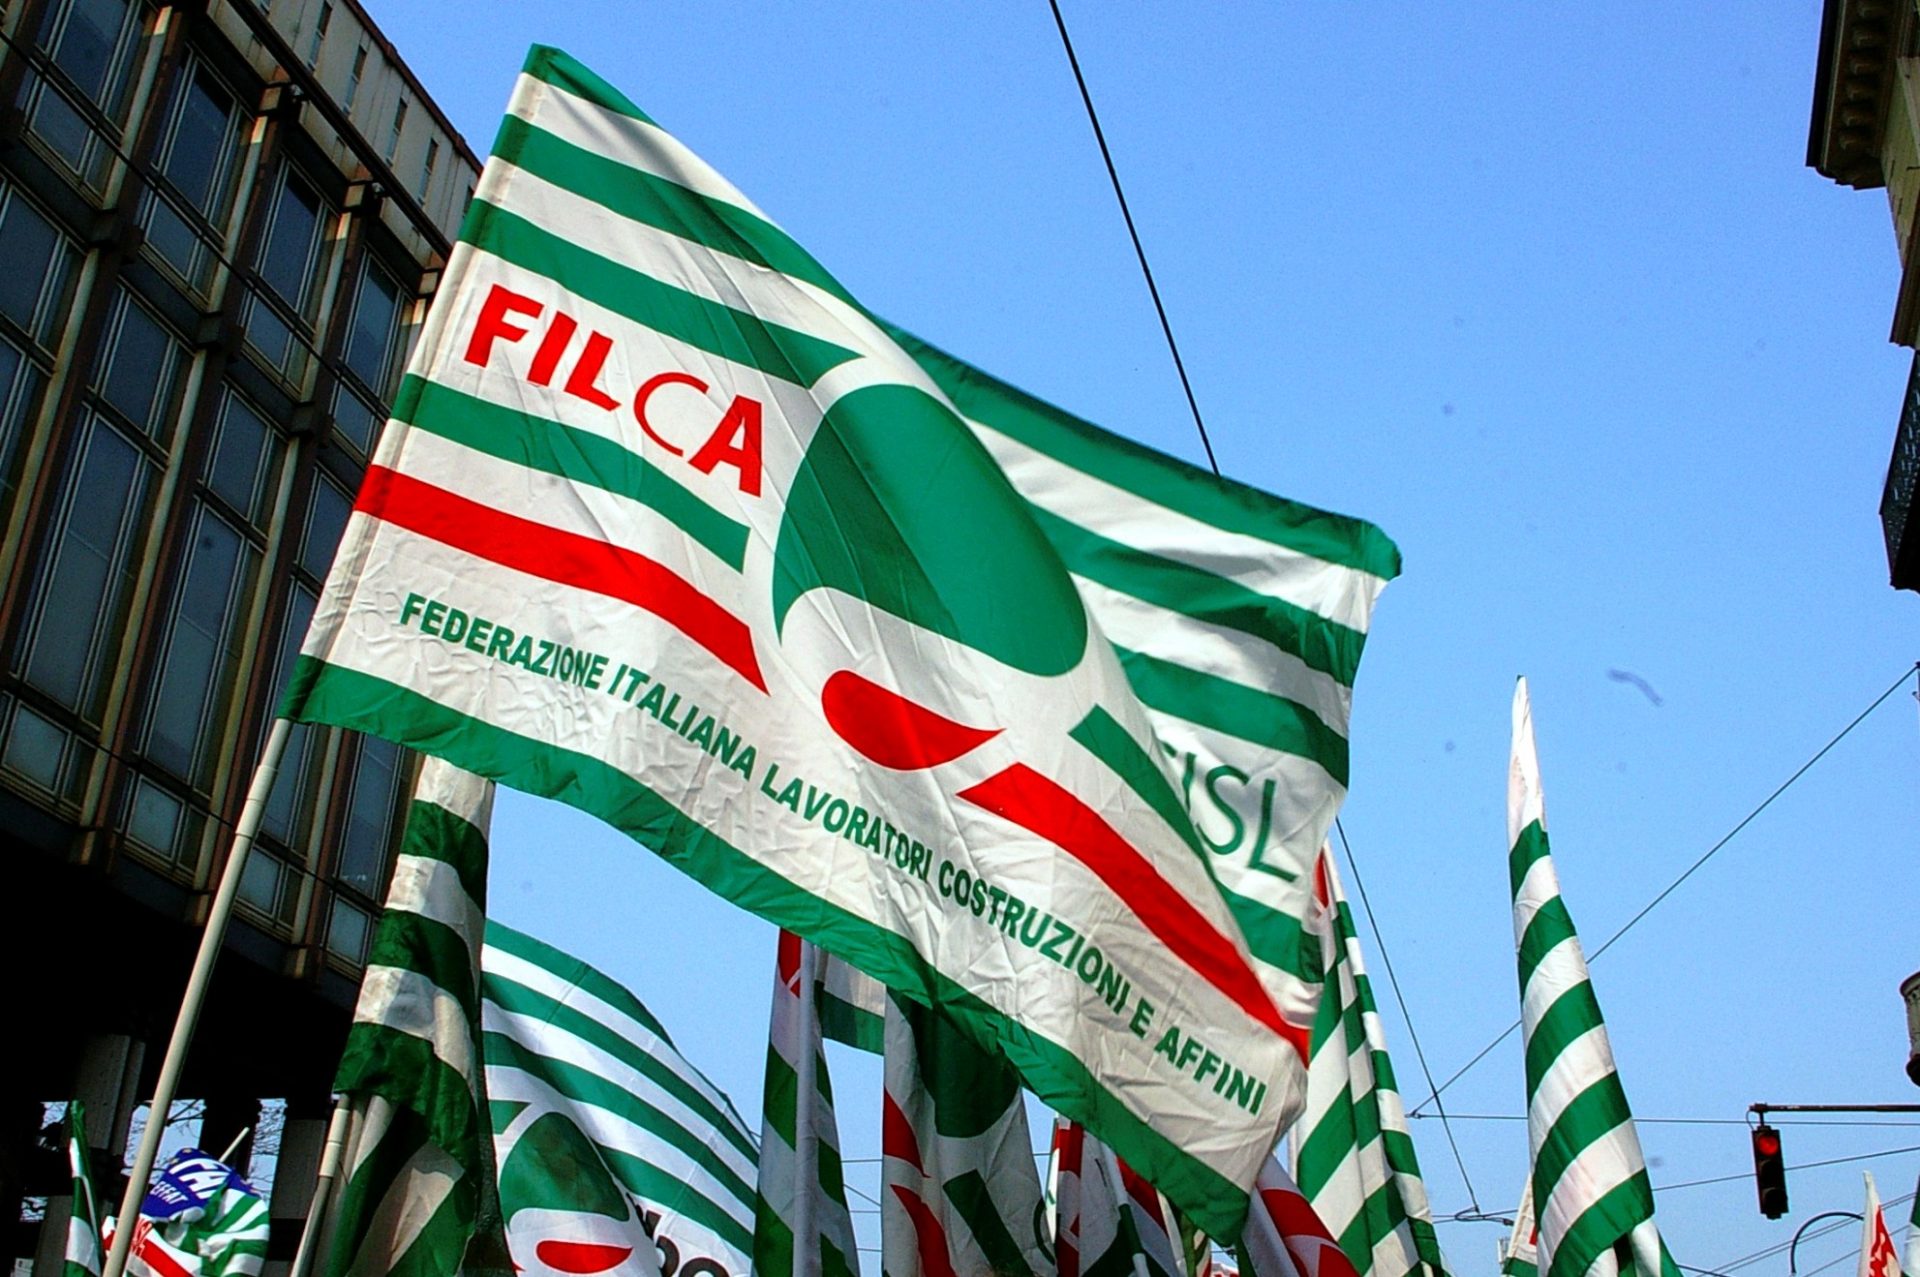 Filca Cisa